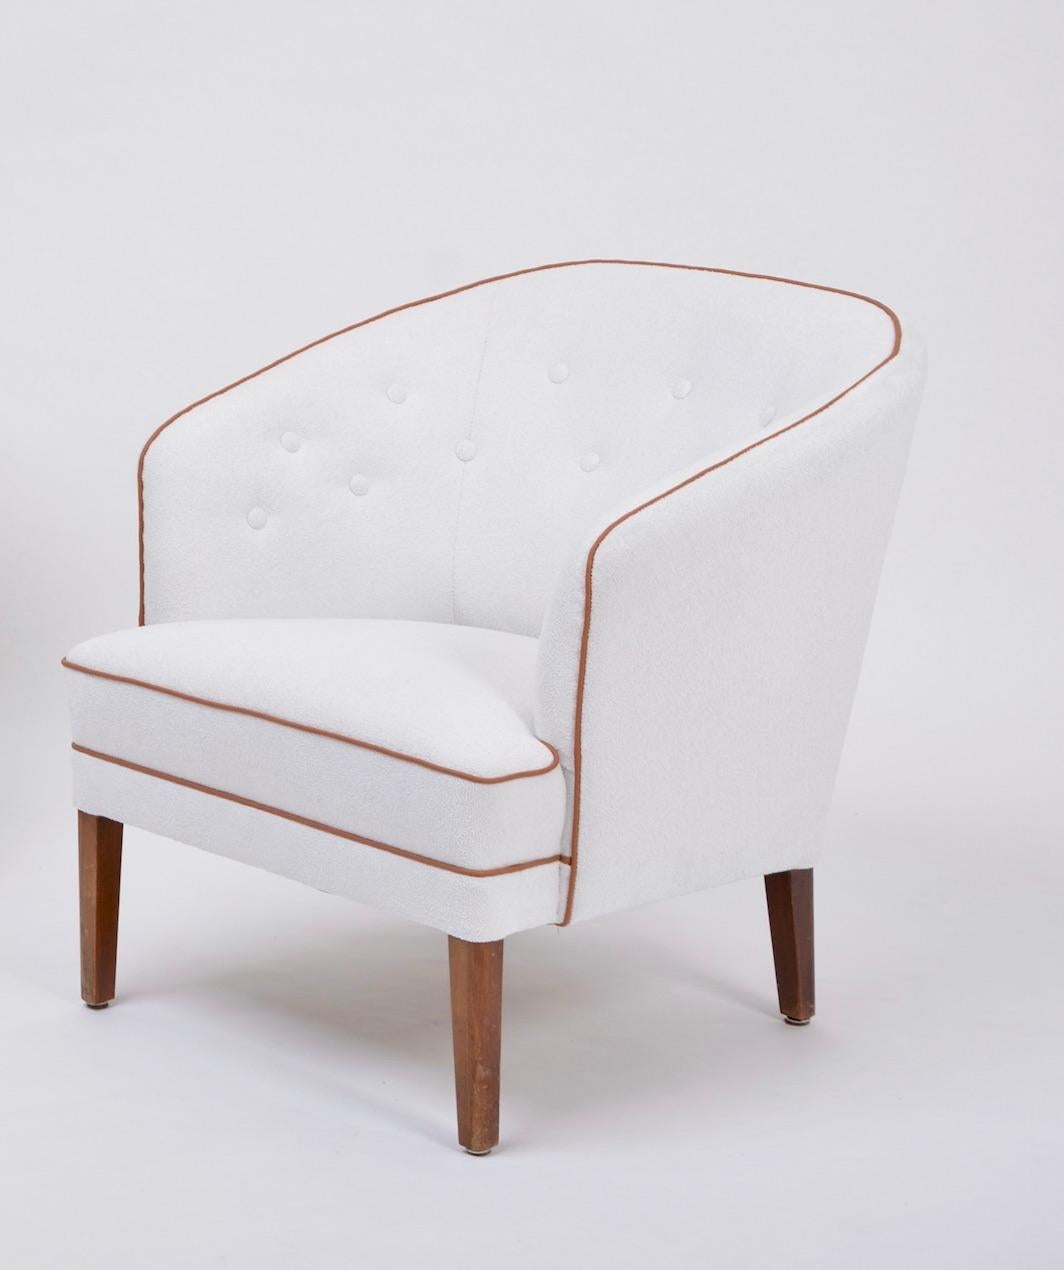 Seltener Sessel mit eleganten Kurven, entworfen und hergestellt vom dänischen Meister Ludvig Pontoppidan. Die Stühle sind in ausgezeichnetem Zustand, da sie neu gepolstert wurden.

Wenn es um dänische Handwerksmeister geht, waren nur wenige, wenn